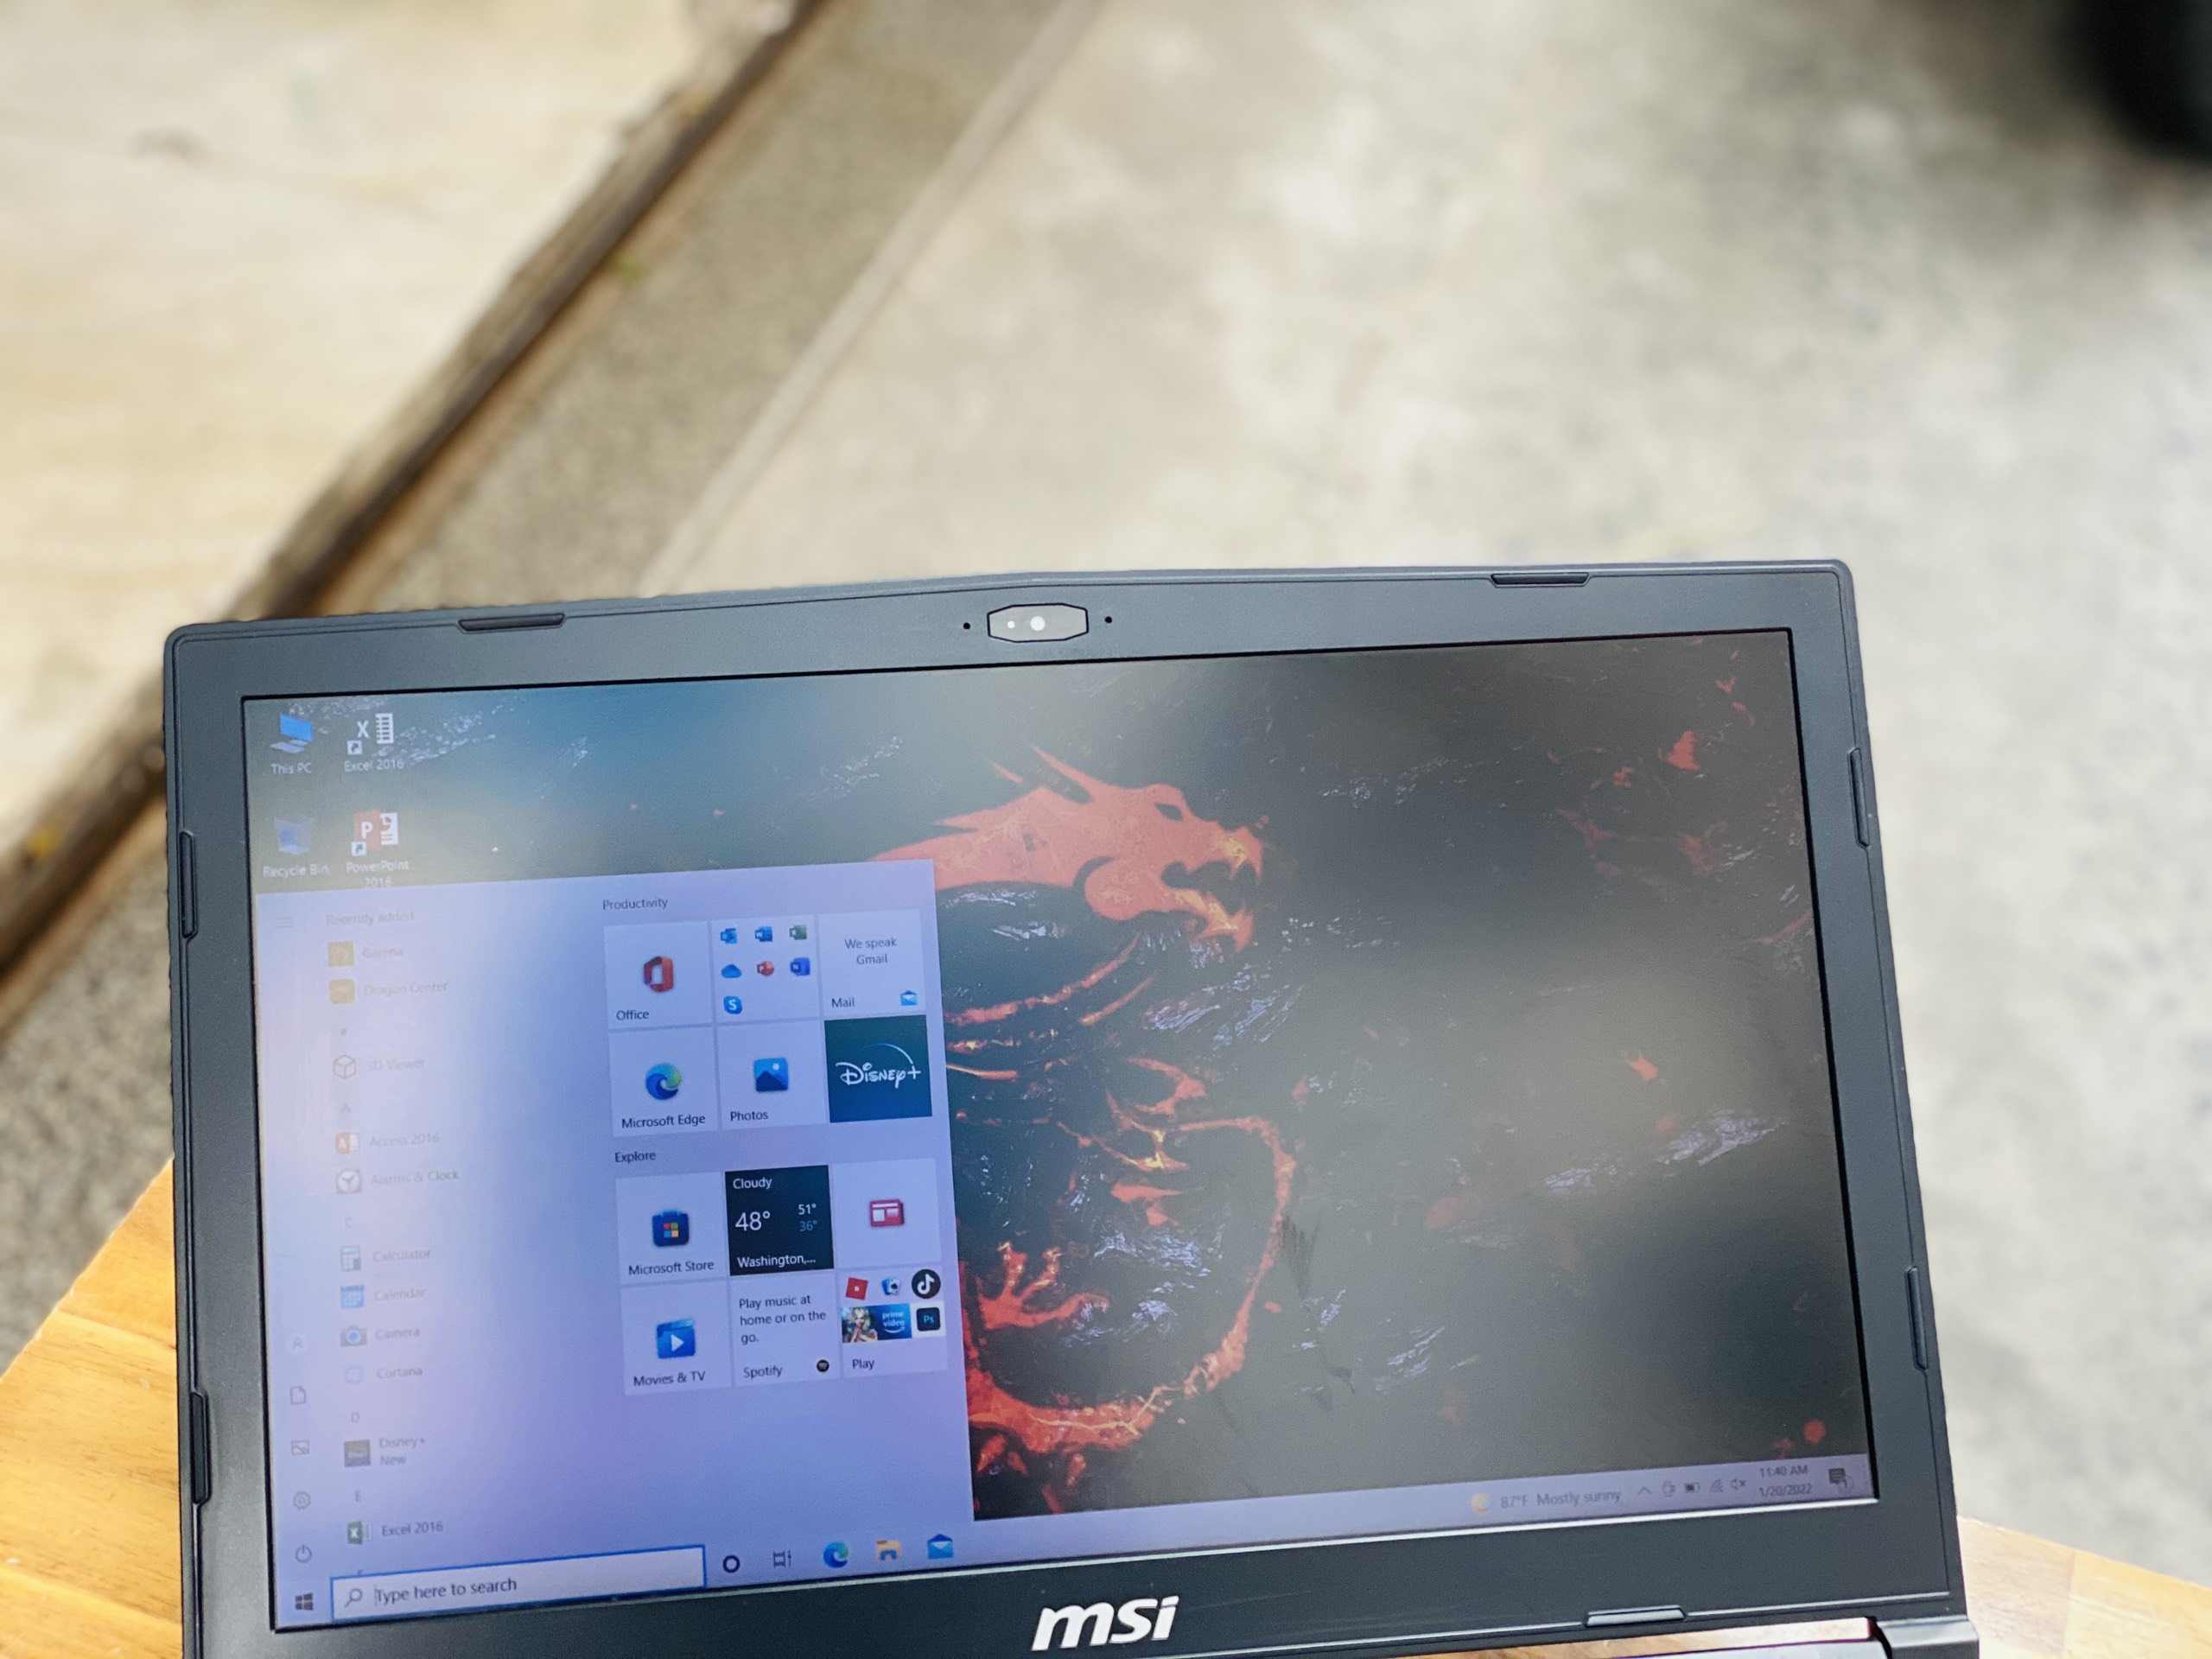 Laptop Gaming MSI GL63/ i7 8750H/ 8G/ SSD128 + 1000G/ GTX1050 4G/ LED ĐỎ/ Chuyên Game Đồ Họa/ Giá rẻ2